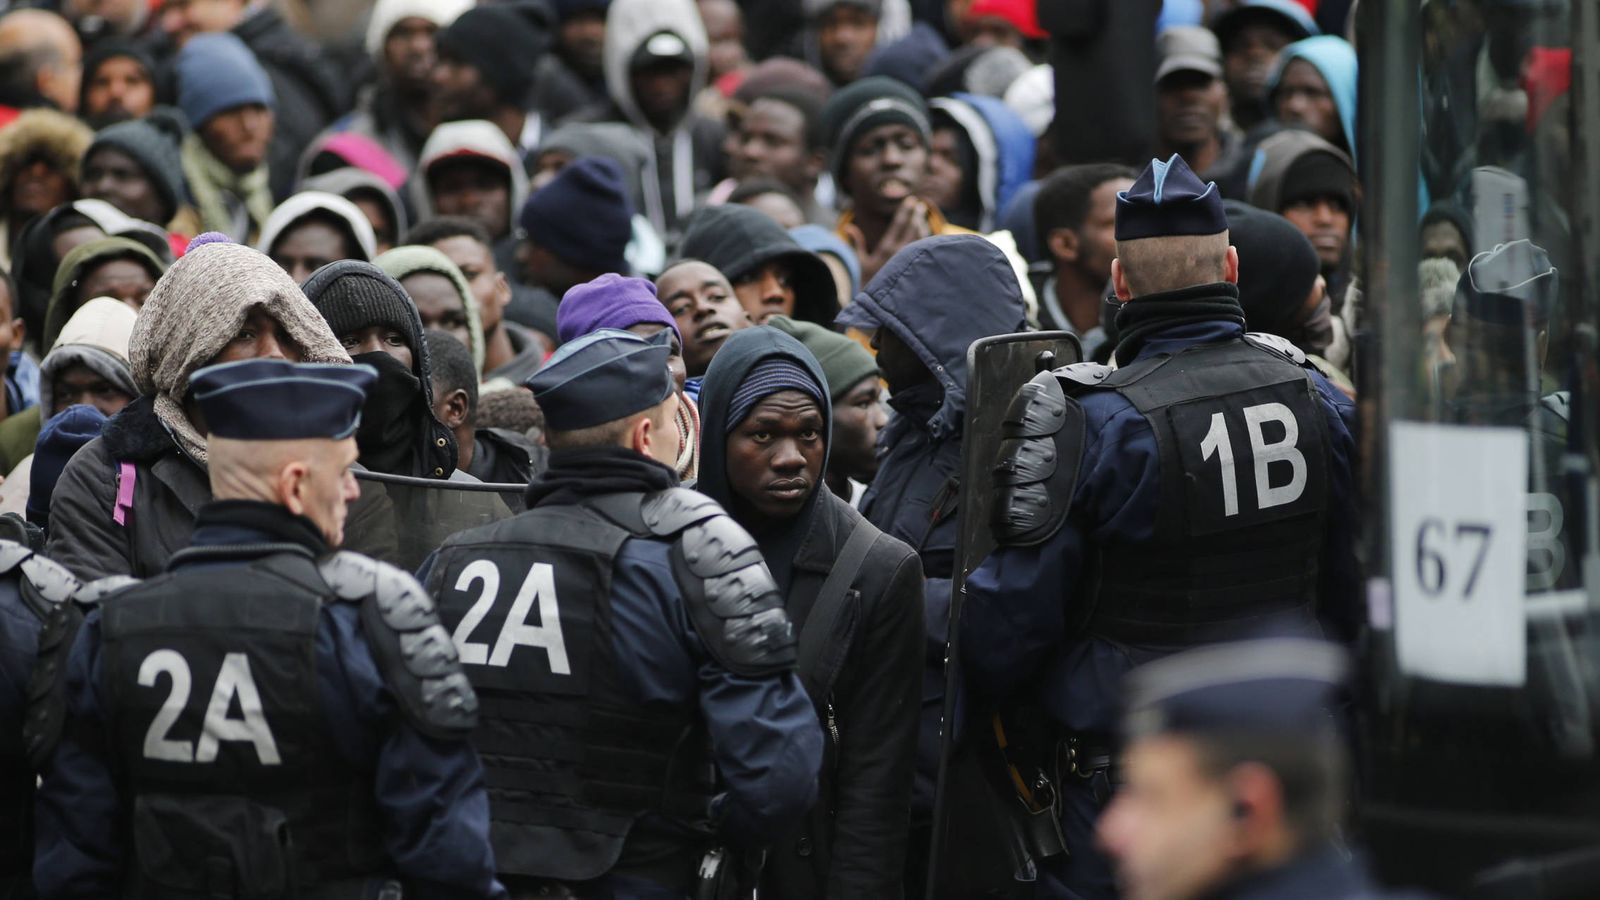 Foto: Agentes de policía franceses ante migrantes transferidos por las autoridades a centros de detención, en París (Reuters). 